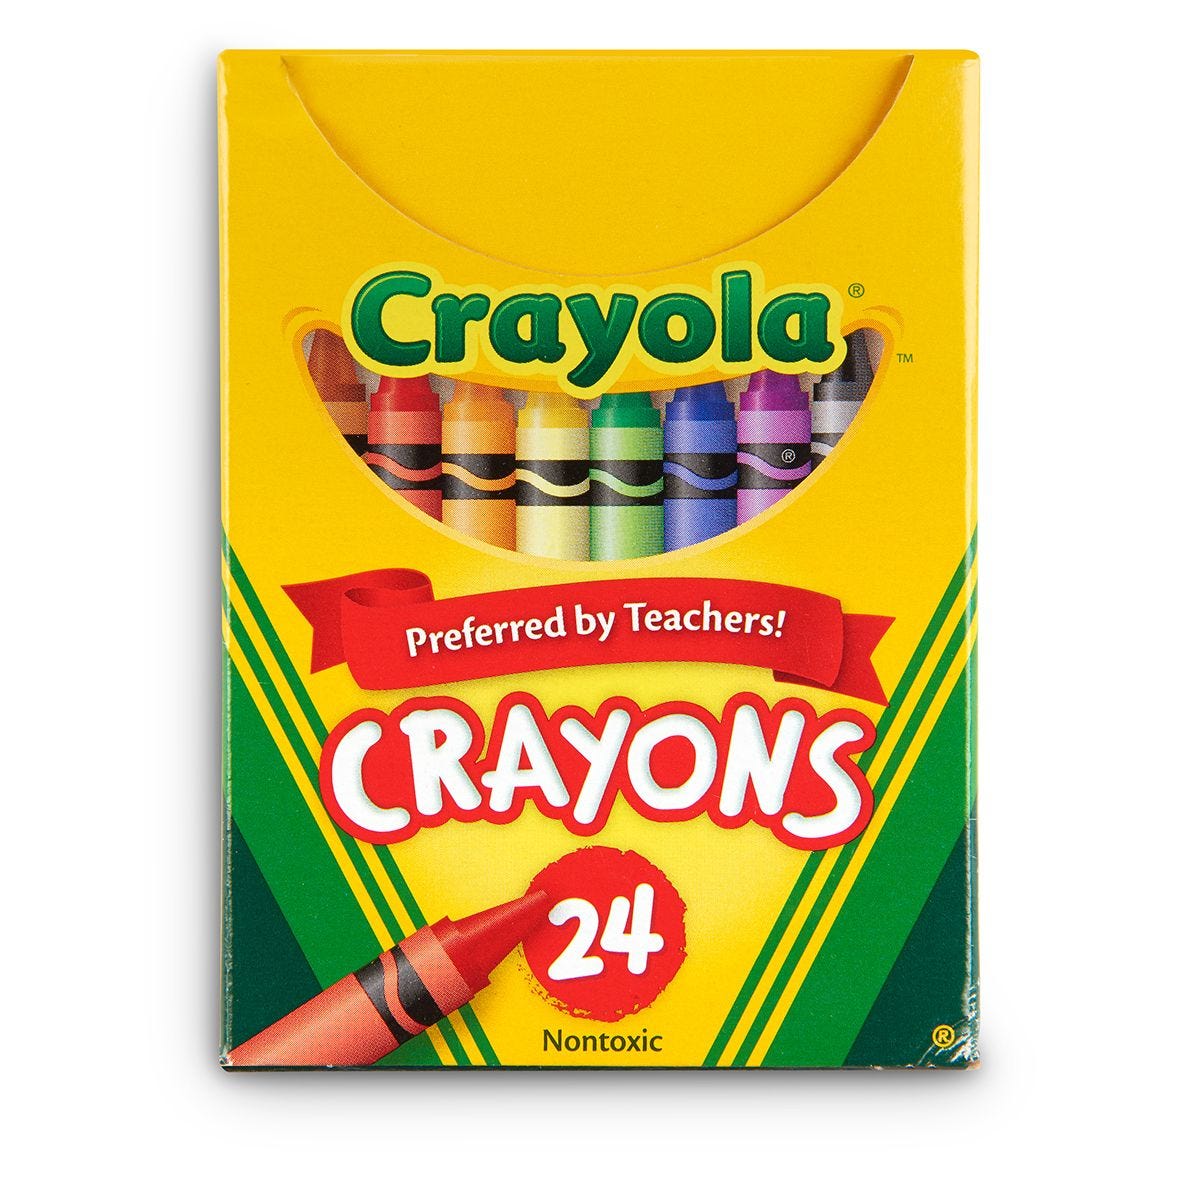 Prang 24 Count Wax Crayons - Assorted - 24 / Box - Kopy Kat Office